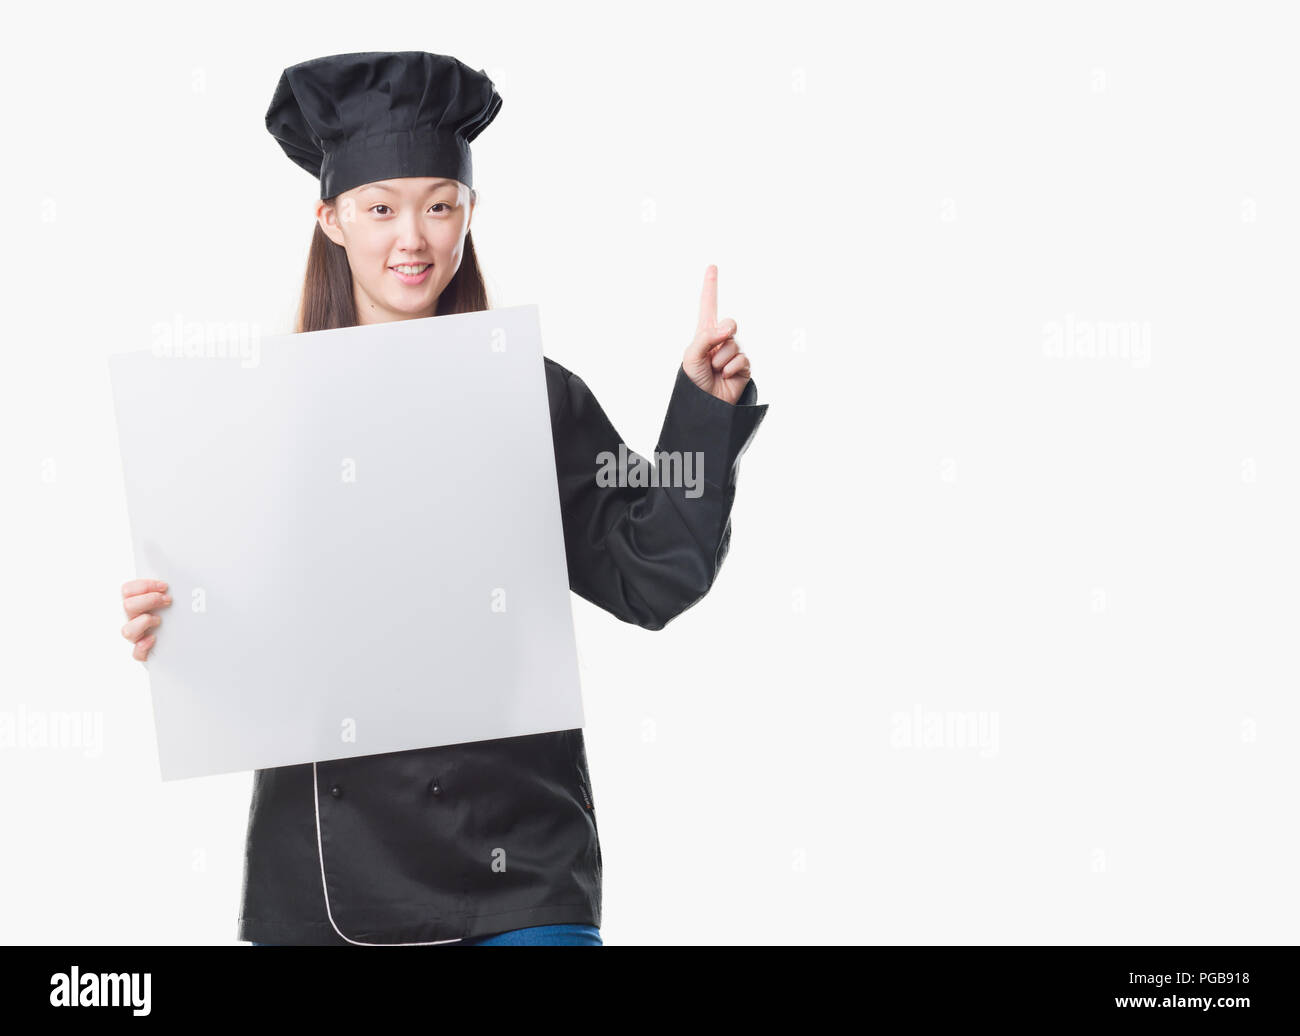 Junge chinesische Frau über isolierte Hintergrund tragen Küchenchef einheitliche Holding banner überrascht mit einer Idee oder Frage Zeigefinger mit glücklichen Gesicht, n Stockfoto